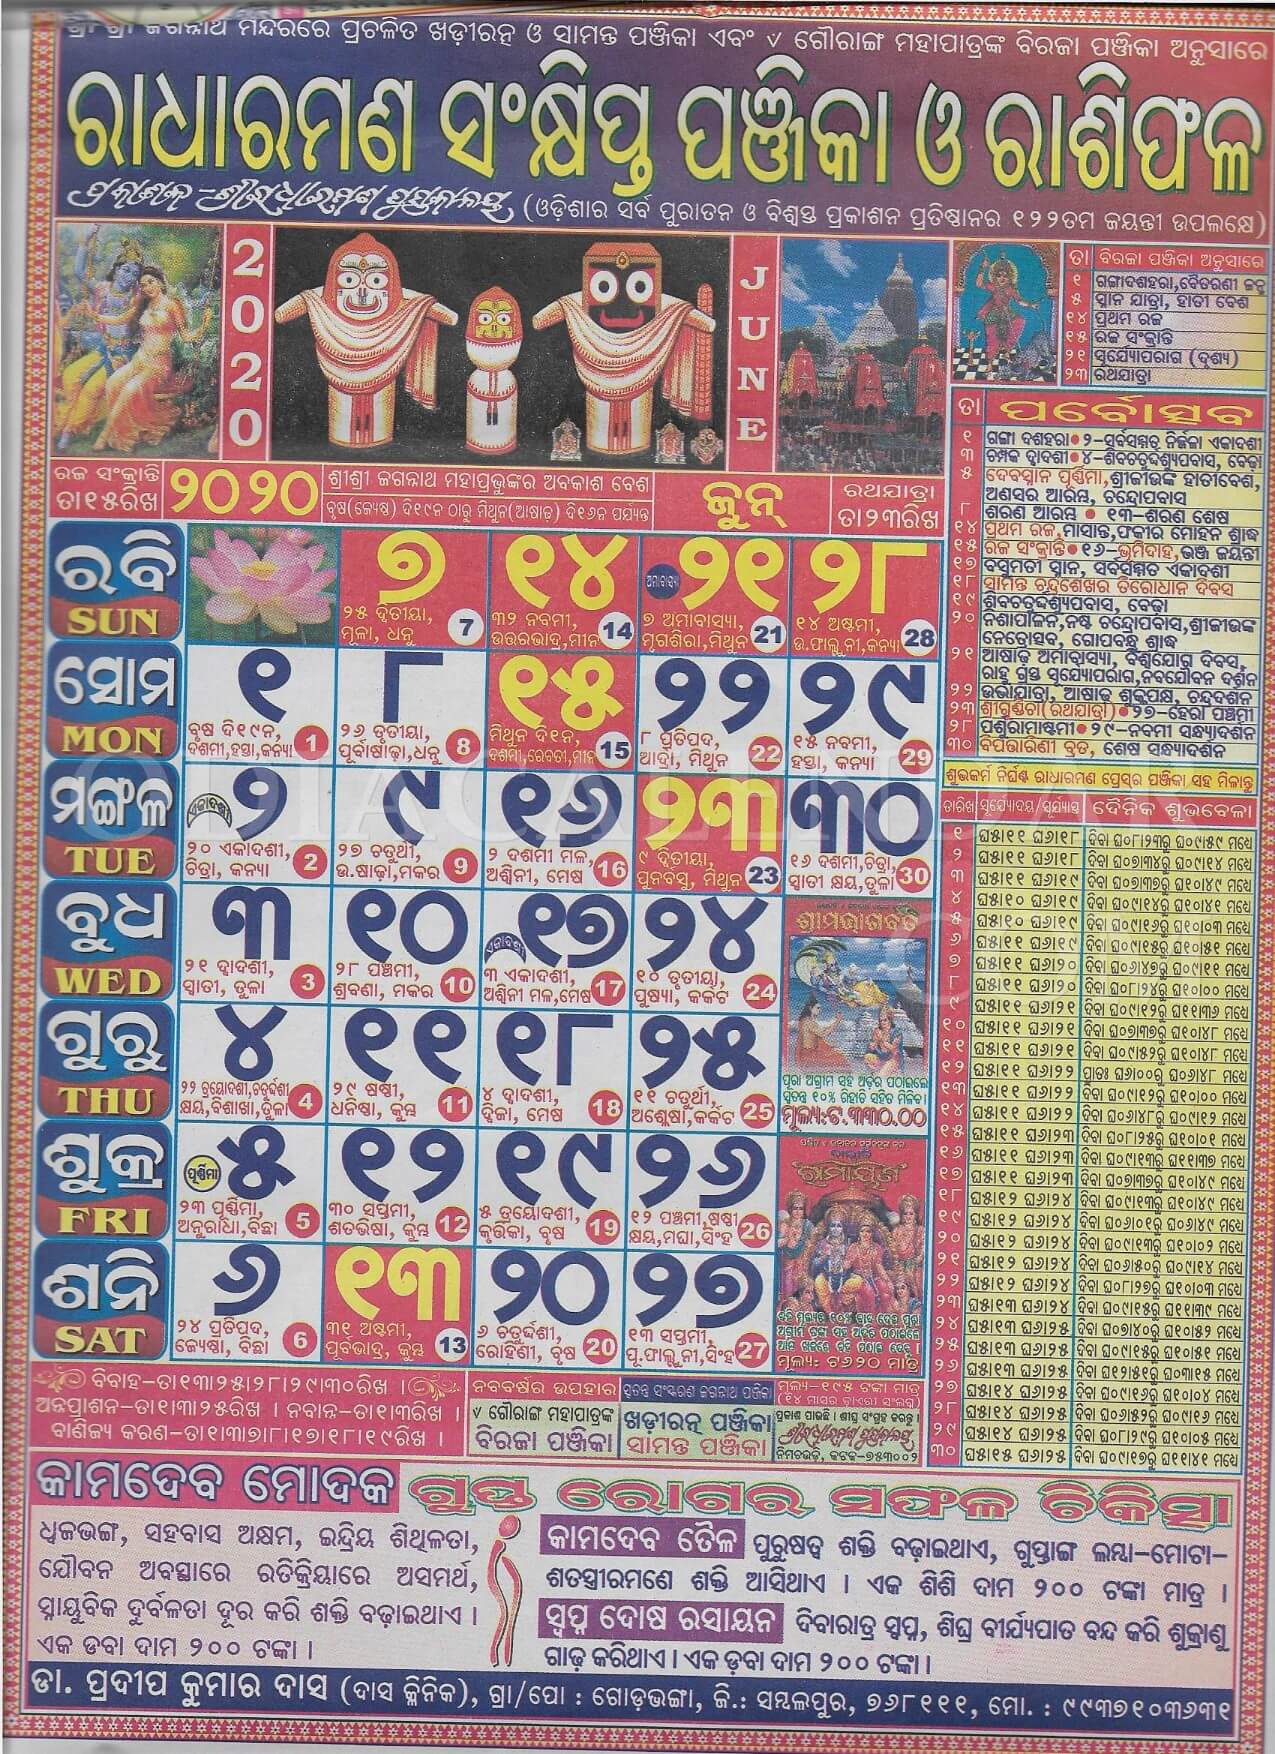 Radharaman Calendar 2020 June